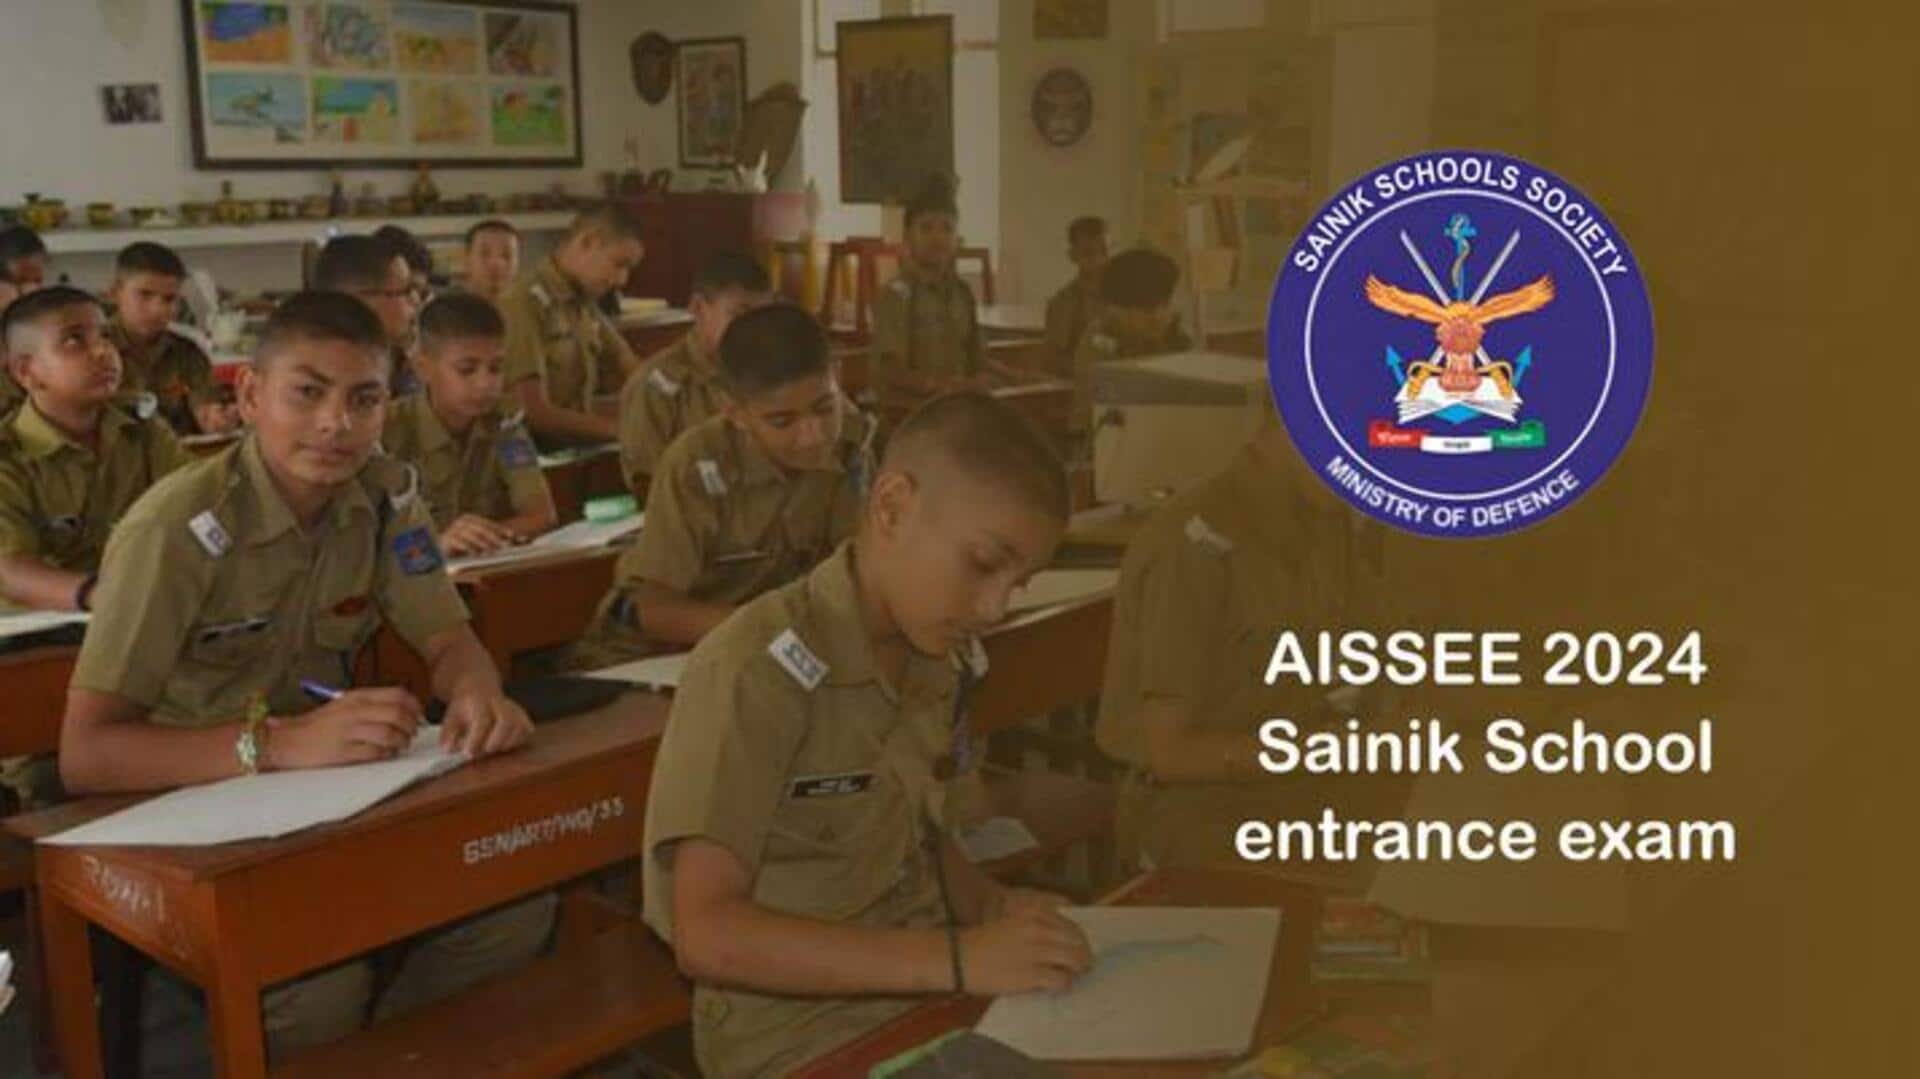 अखिल भारतीय सैनिक स्कूल प्रवेश परीक्षा के लिए पंजीकरण शुरू, 16 दिसंबर तक करें आवेदन